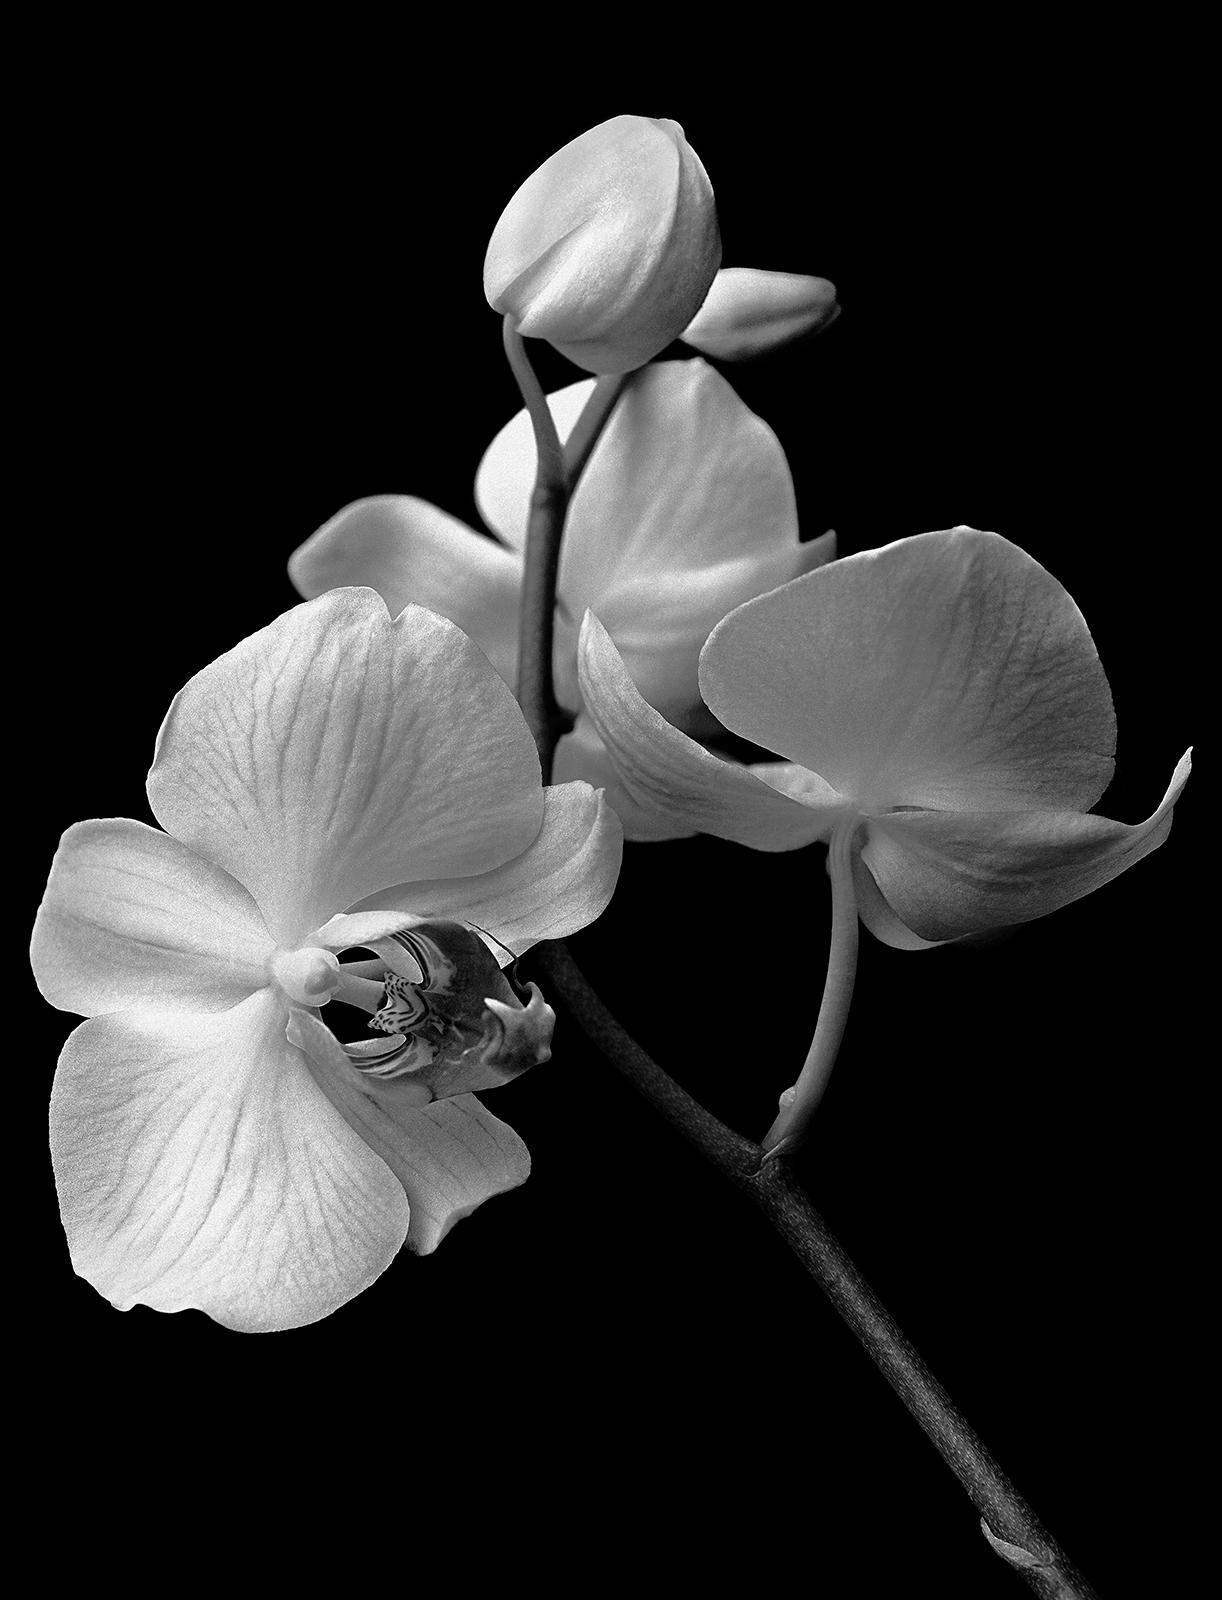 Black and White Photograph Ian Sanderson - Orchid - Impression de nature en édition limitée signée, photo de nature noire, surdimensionnée